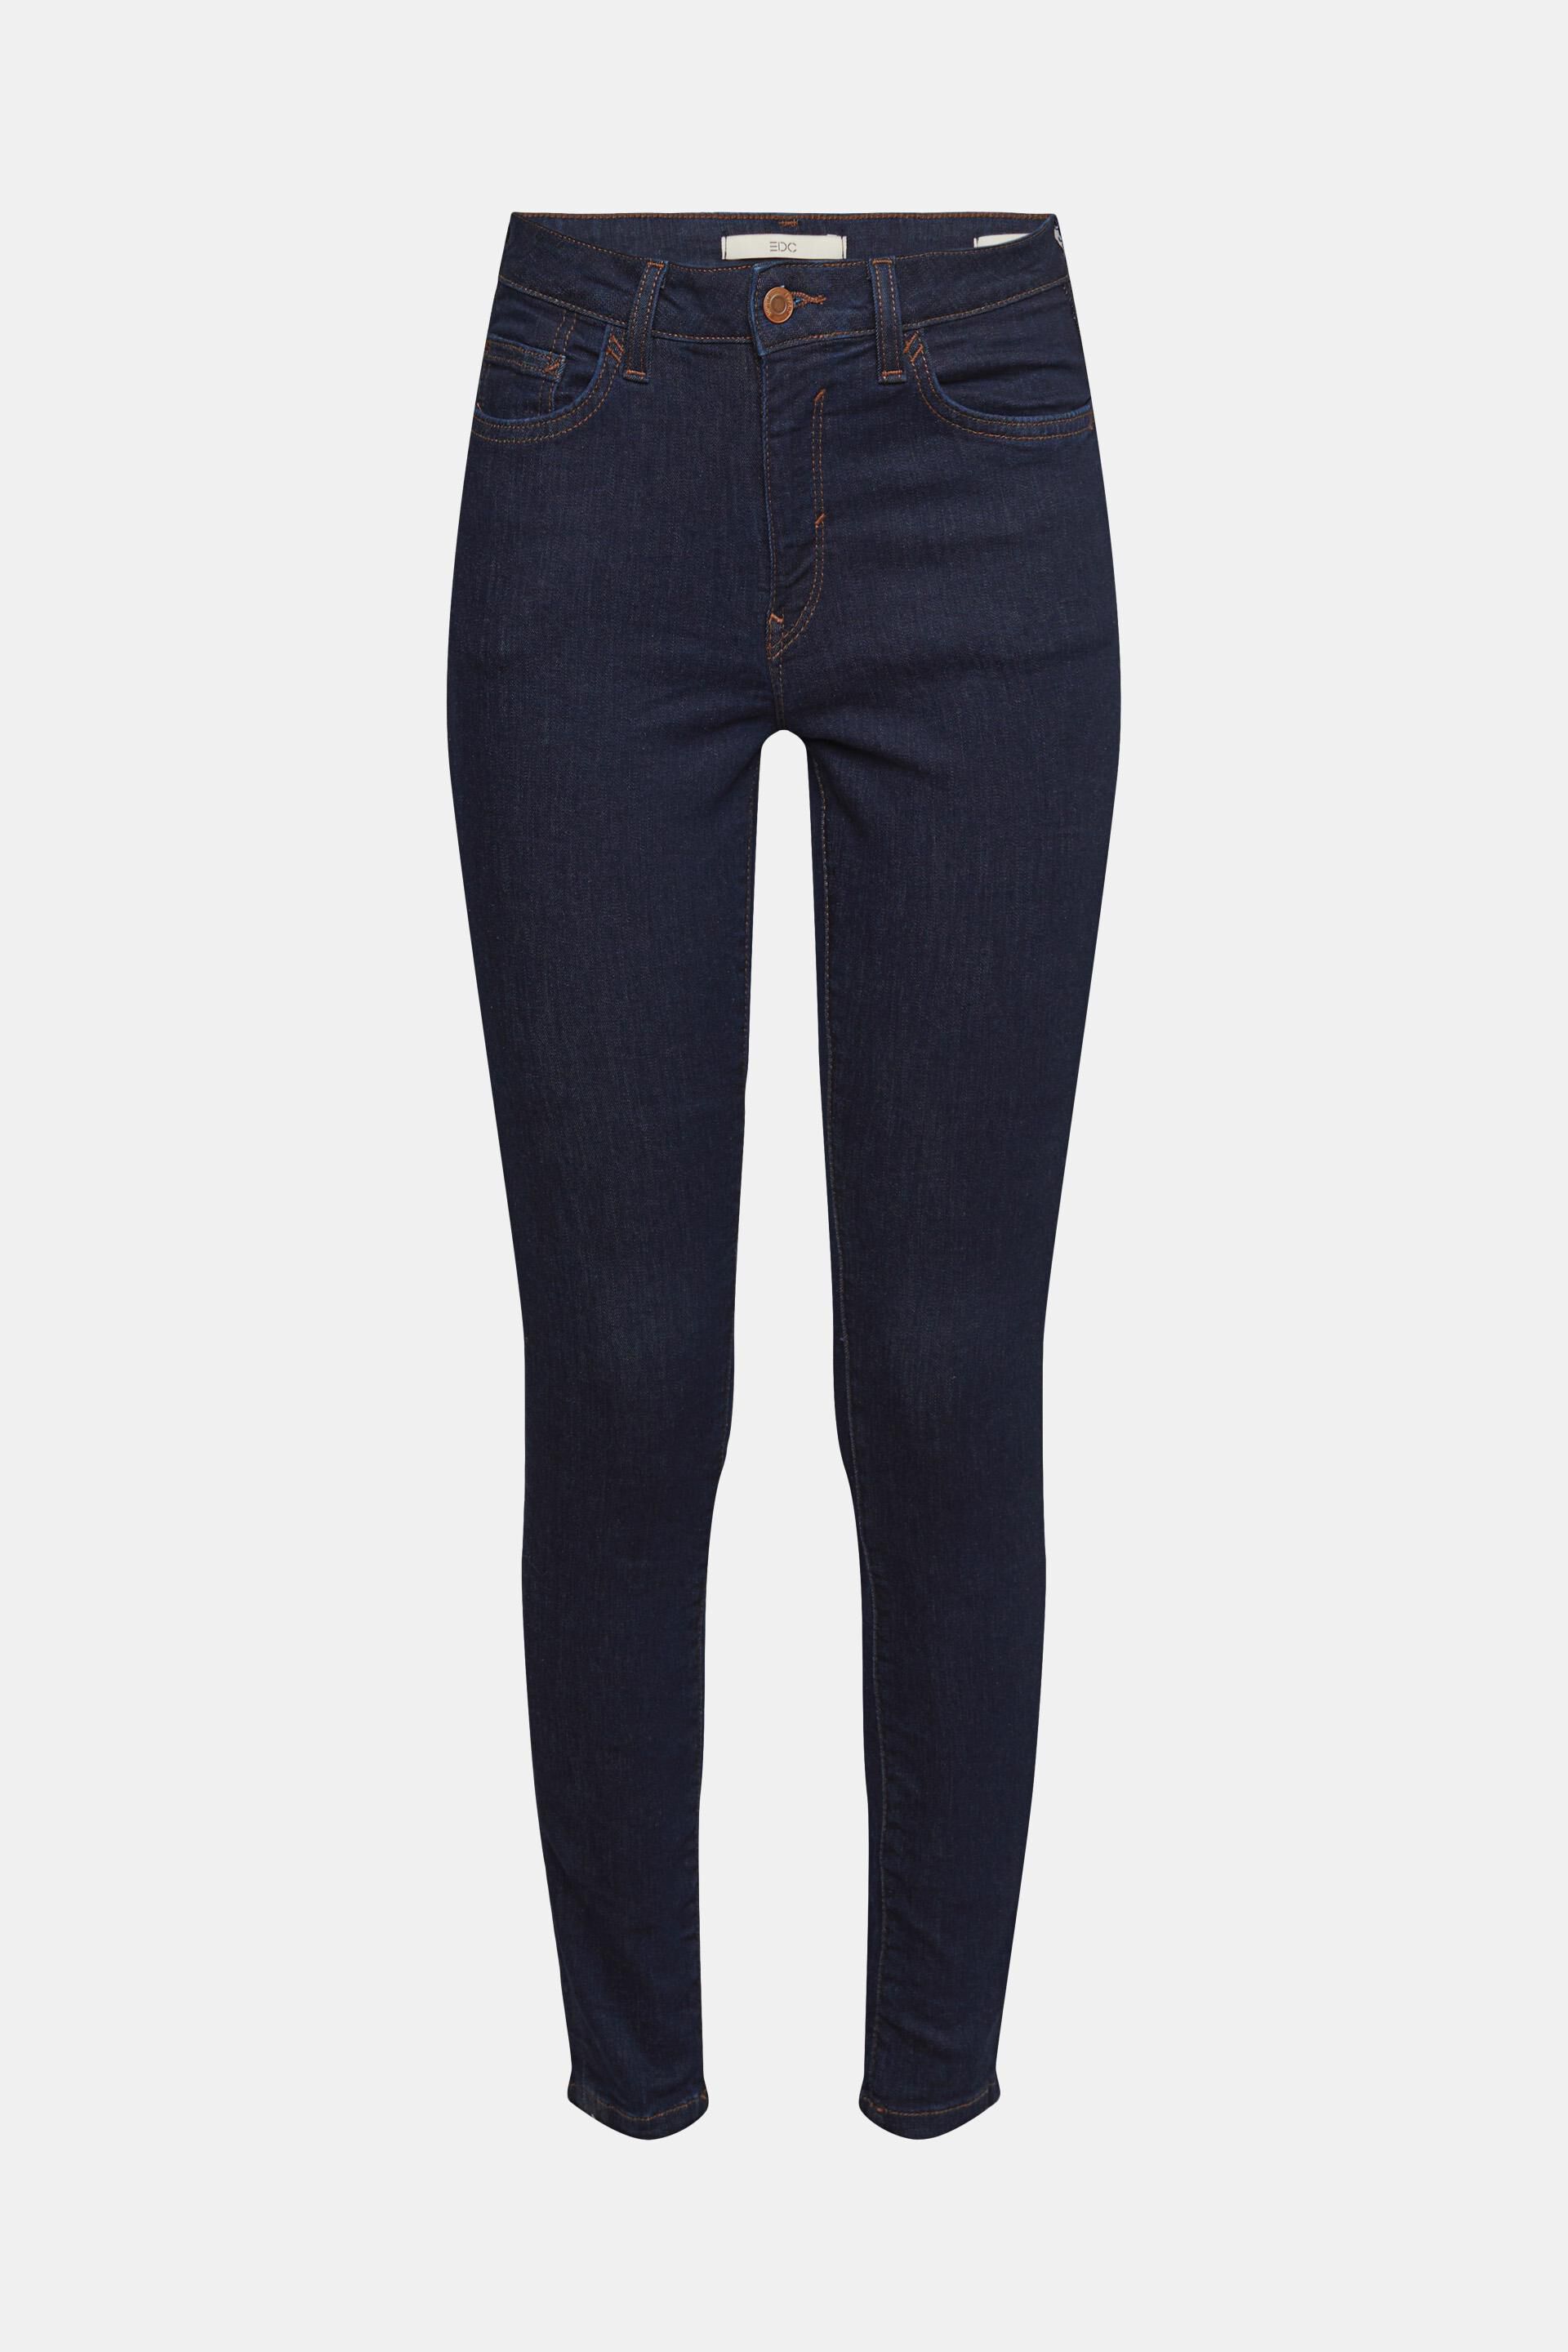 Cimarron Jeggings & Skinny & Slim Red 28                  EU WOMEN FASHION Jeans Jeggings & Skinny & Slim Basic discount 64% 